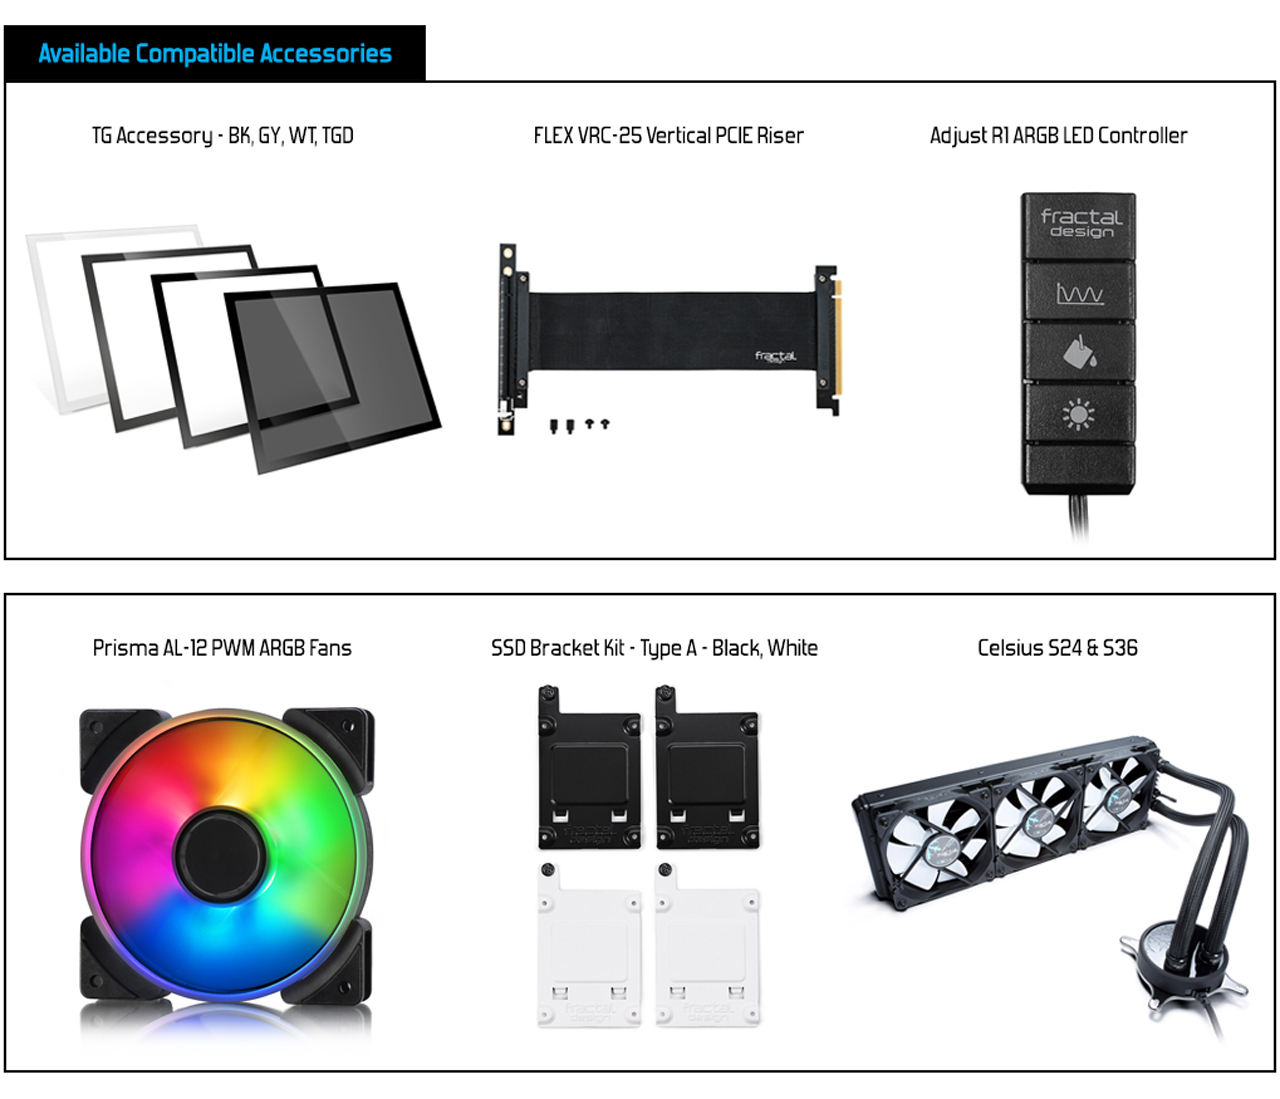 Compatible Accessories: TG Accessory - BK, WT, TGD + FLEX VRC-25 Vertical PCIE Riser + Adjust Rl ARGB LED Controller + Prisma AL-12 PWM ARGB Fans + SSD Bracket Kit - Type A - Black, White + Celsius S24 & S36